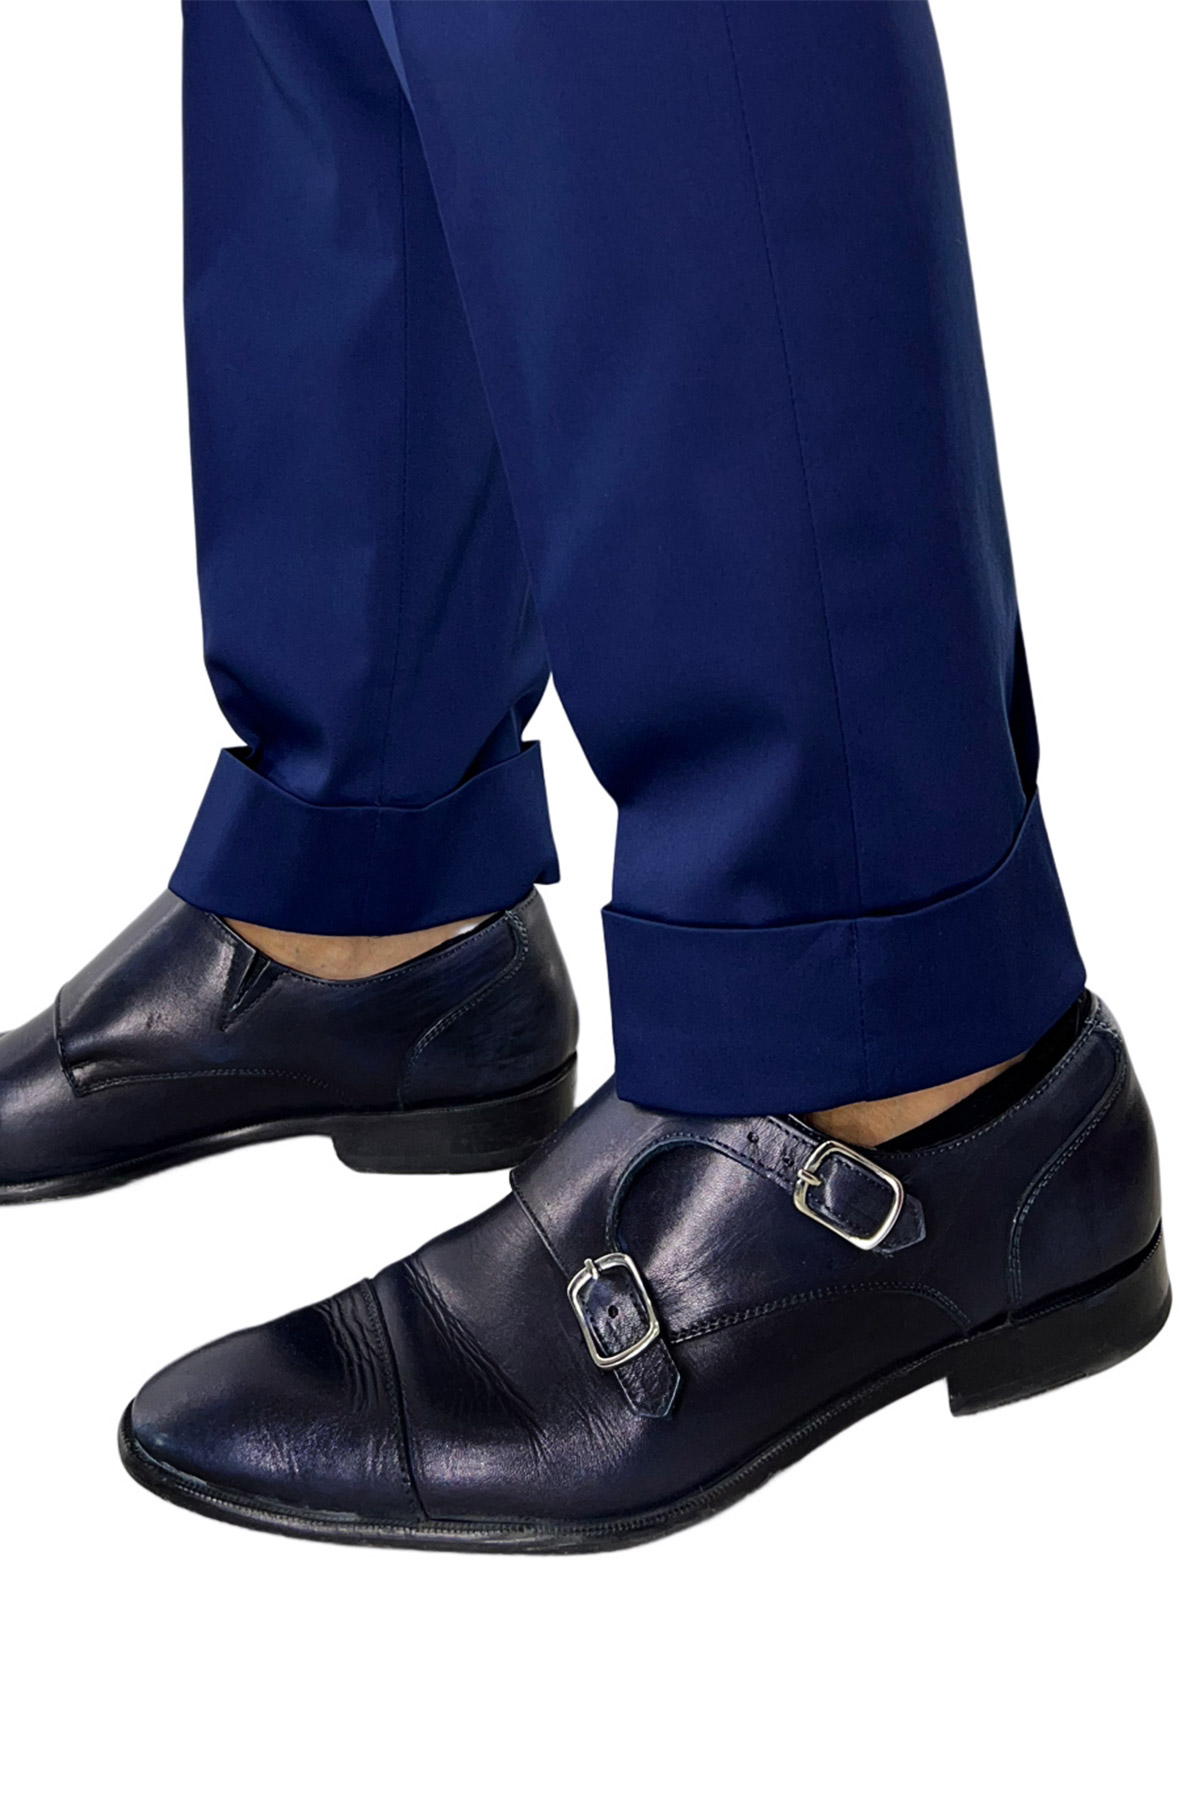 Pantalone uomo Navy blu di cotone leggermente elastico tasca america con una pinces e risvolto 4cm